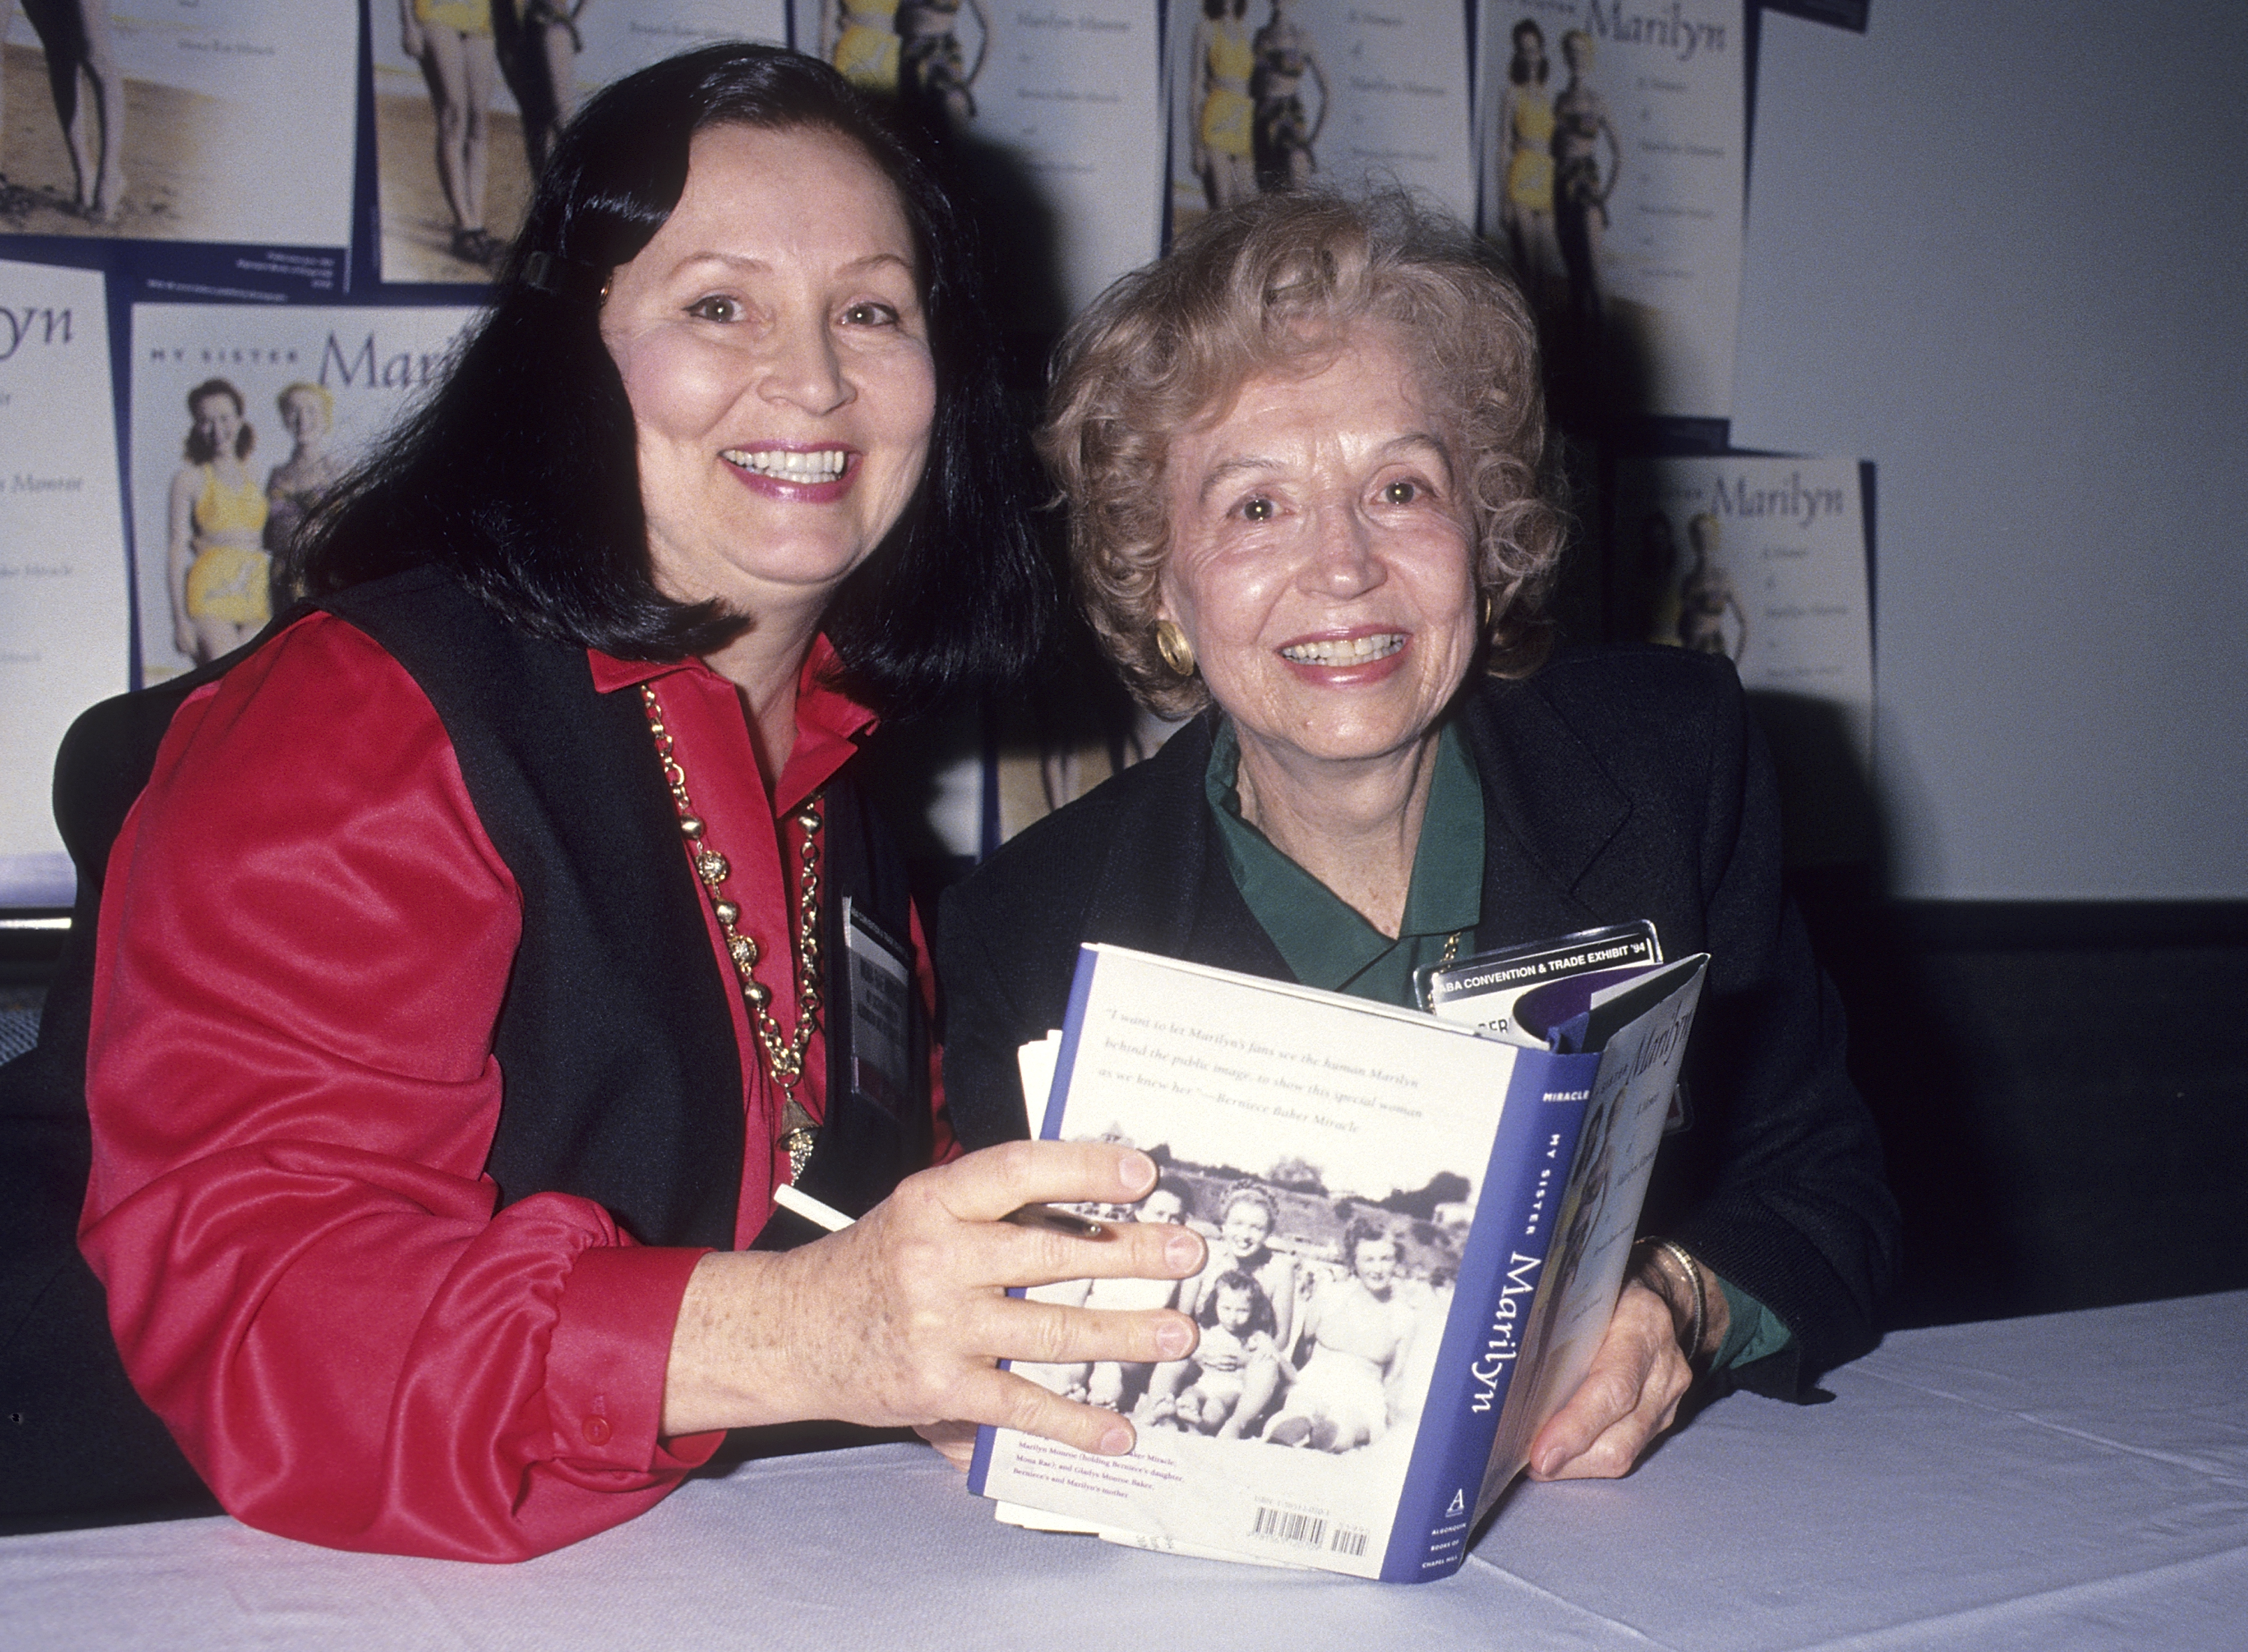 Berniece Baker Miracle et sa fille Mona Rae Miracke assistent à la 94e convention annuelle de l'American Booksellers Association le 28 mai 1994 à Los Angeles, Californie | Source : Getty Images